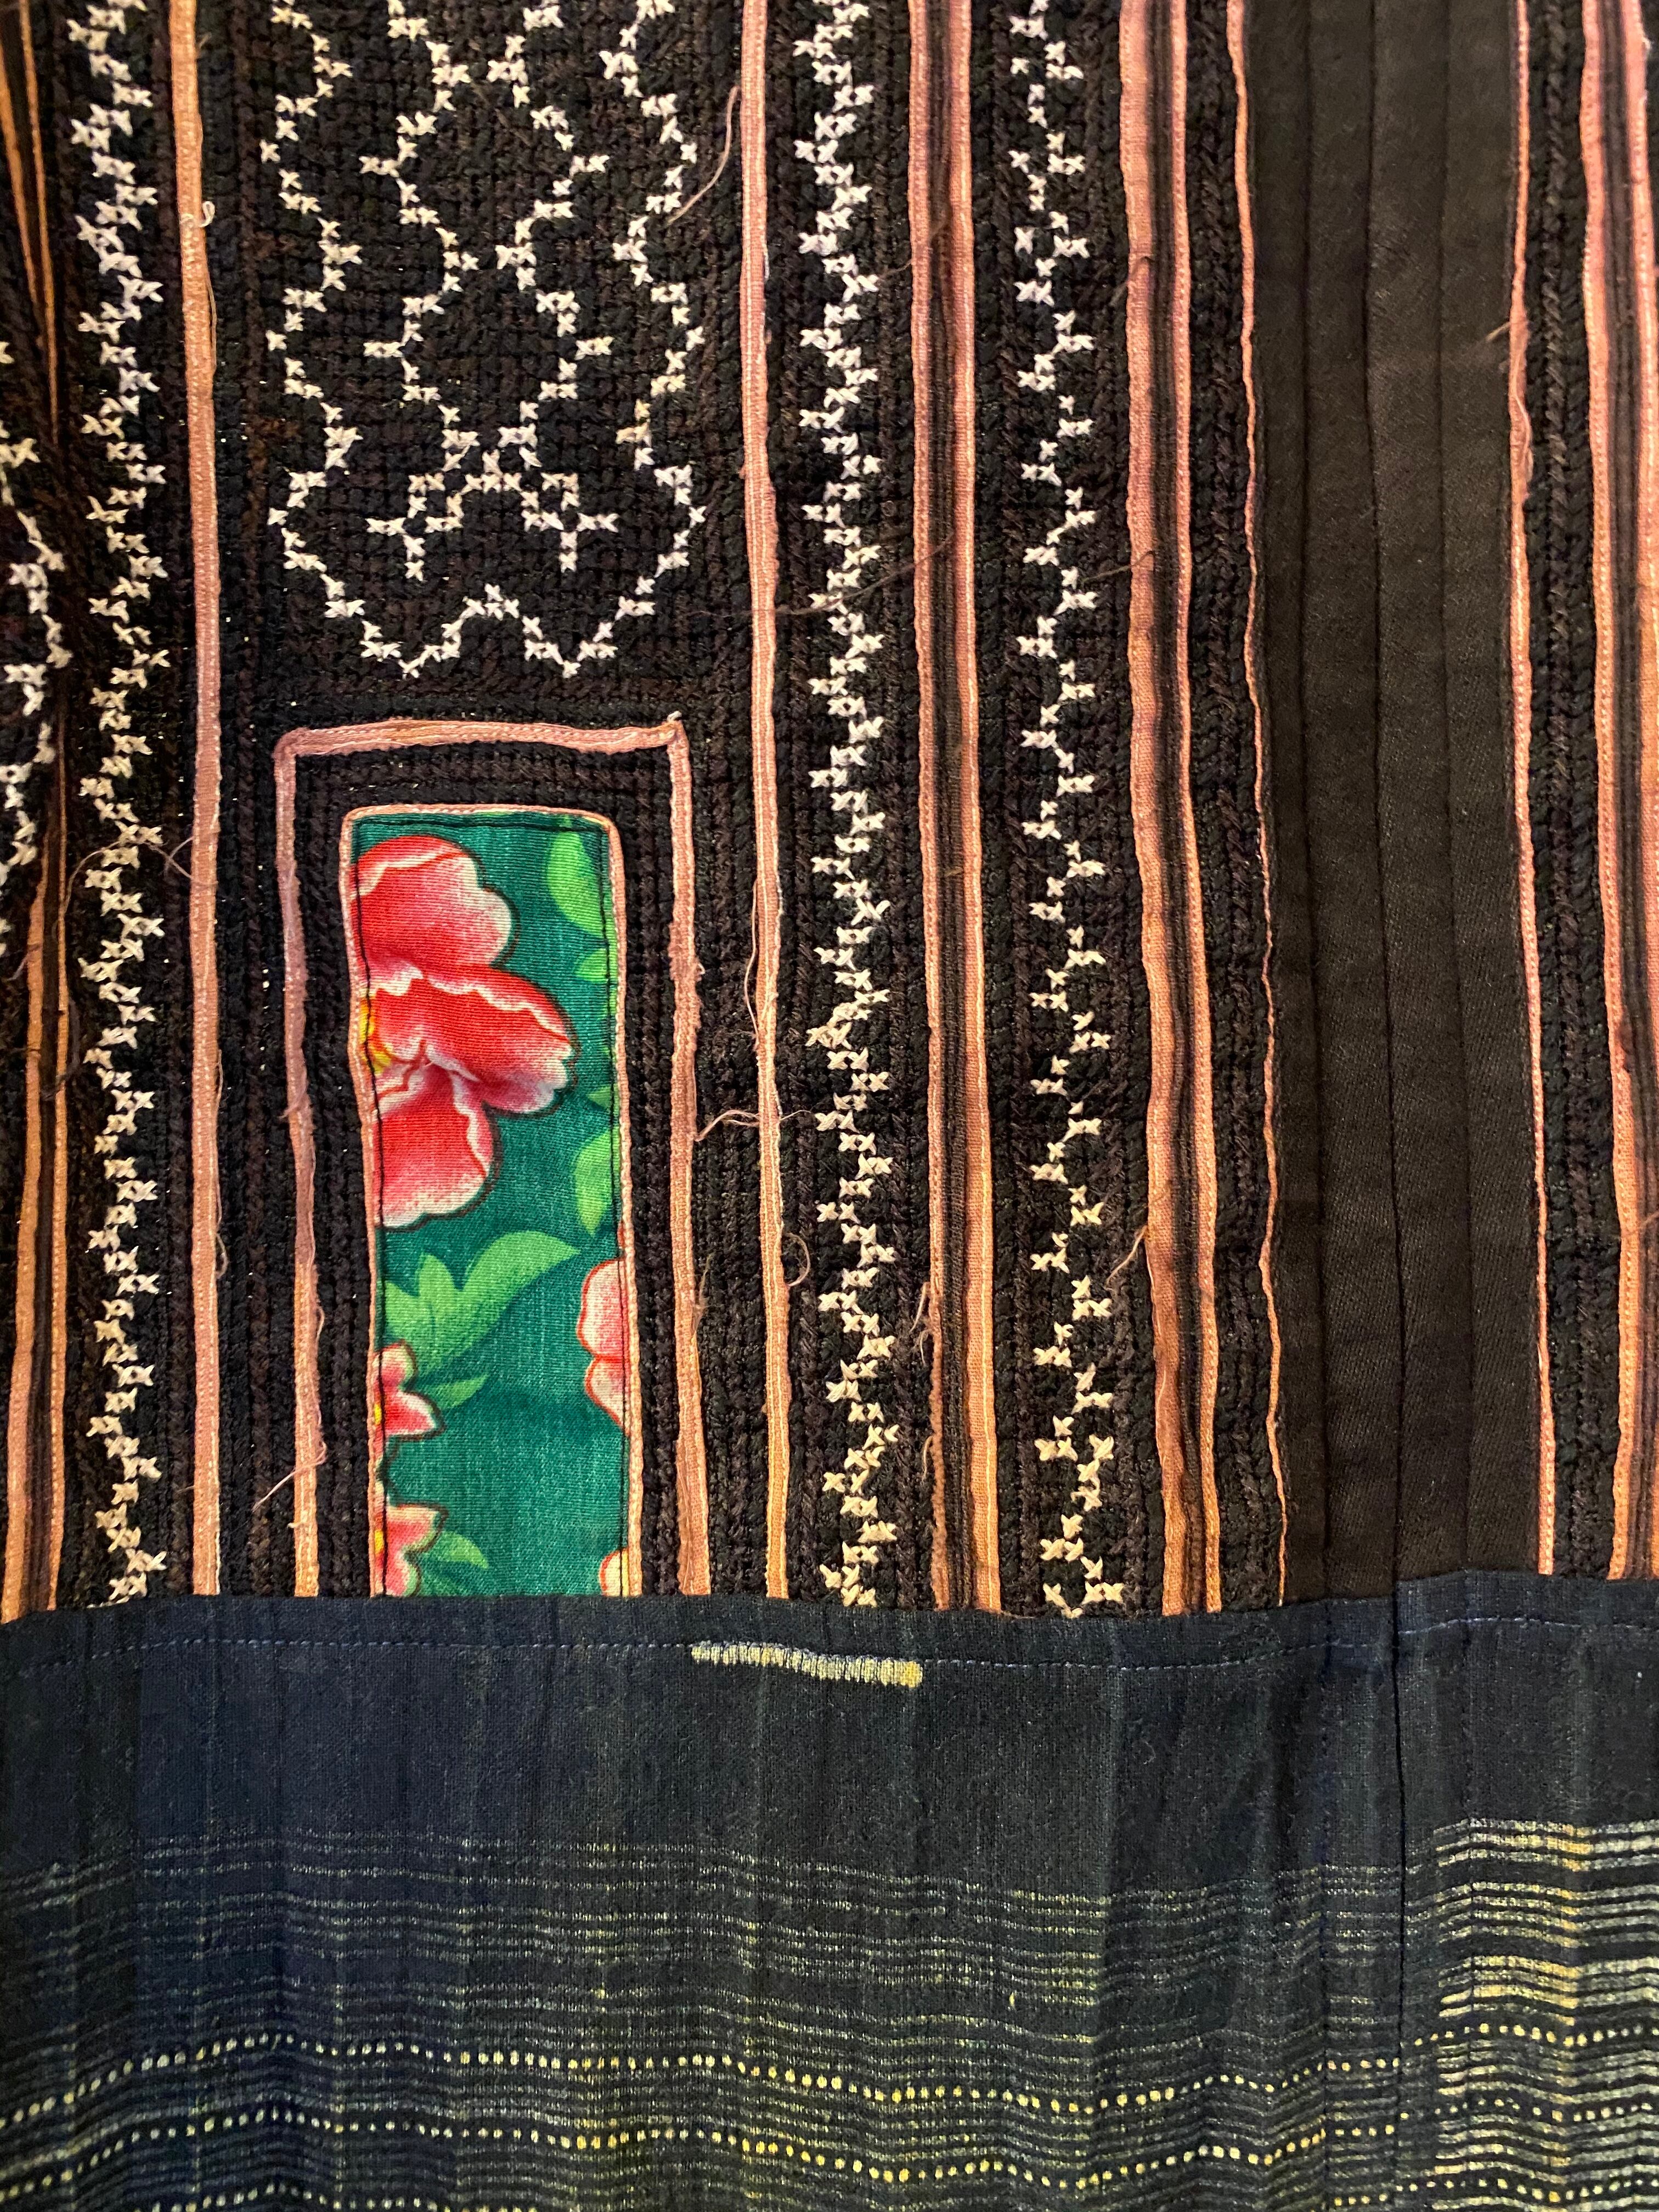 ベトナム黒モン族刺繍と藍染めバティックの五分袖膝丈コットンワンピース TI1450 地球雑貨 LINRYU WORLD UP